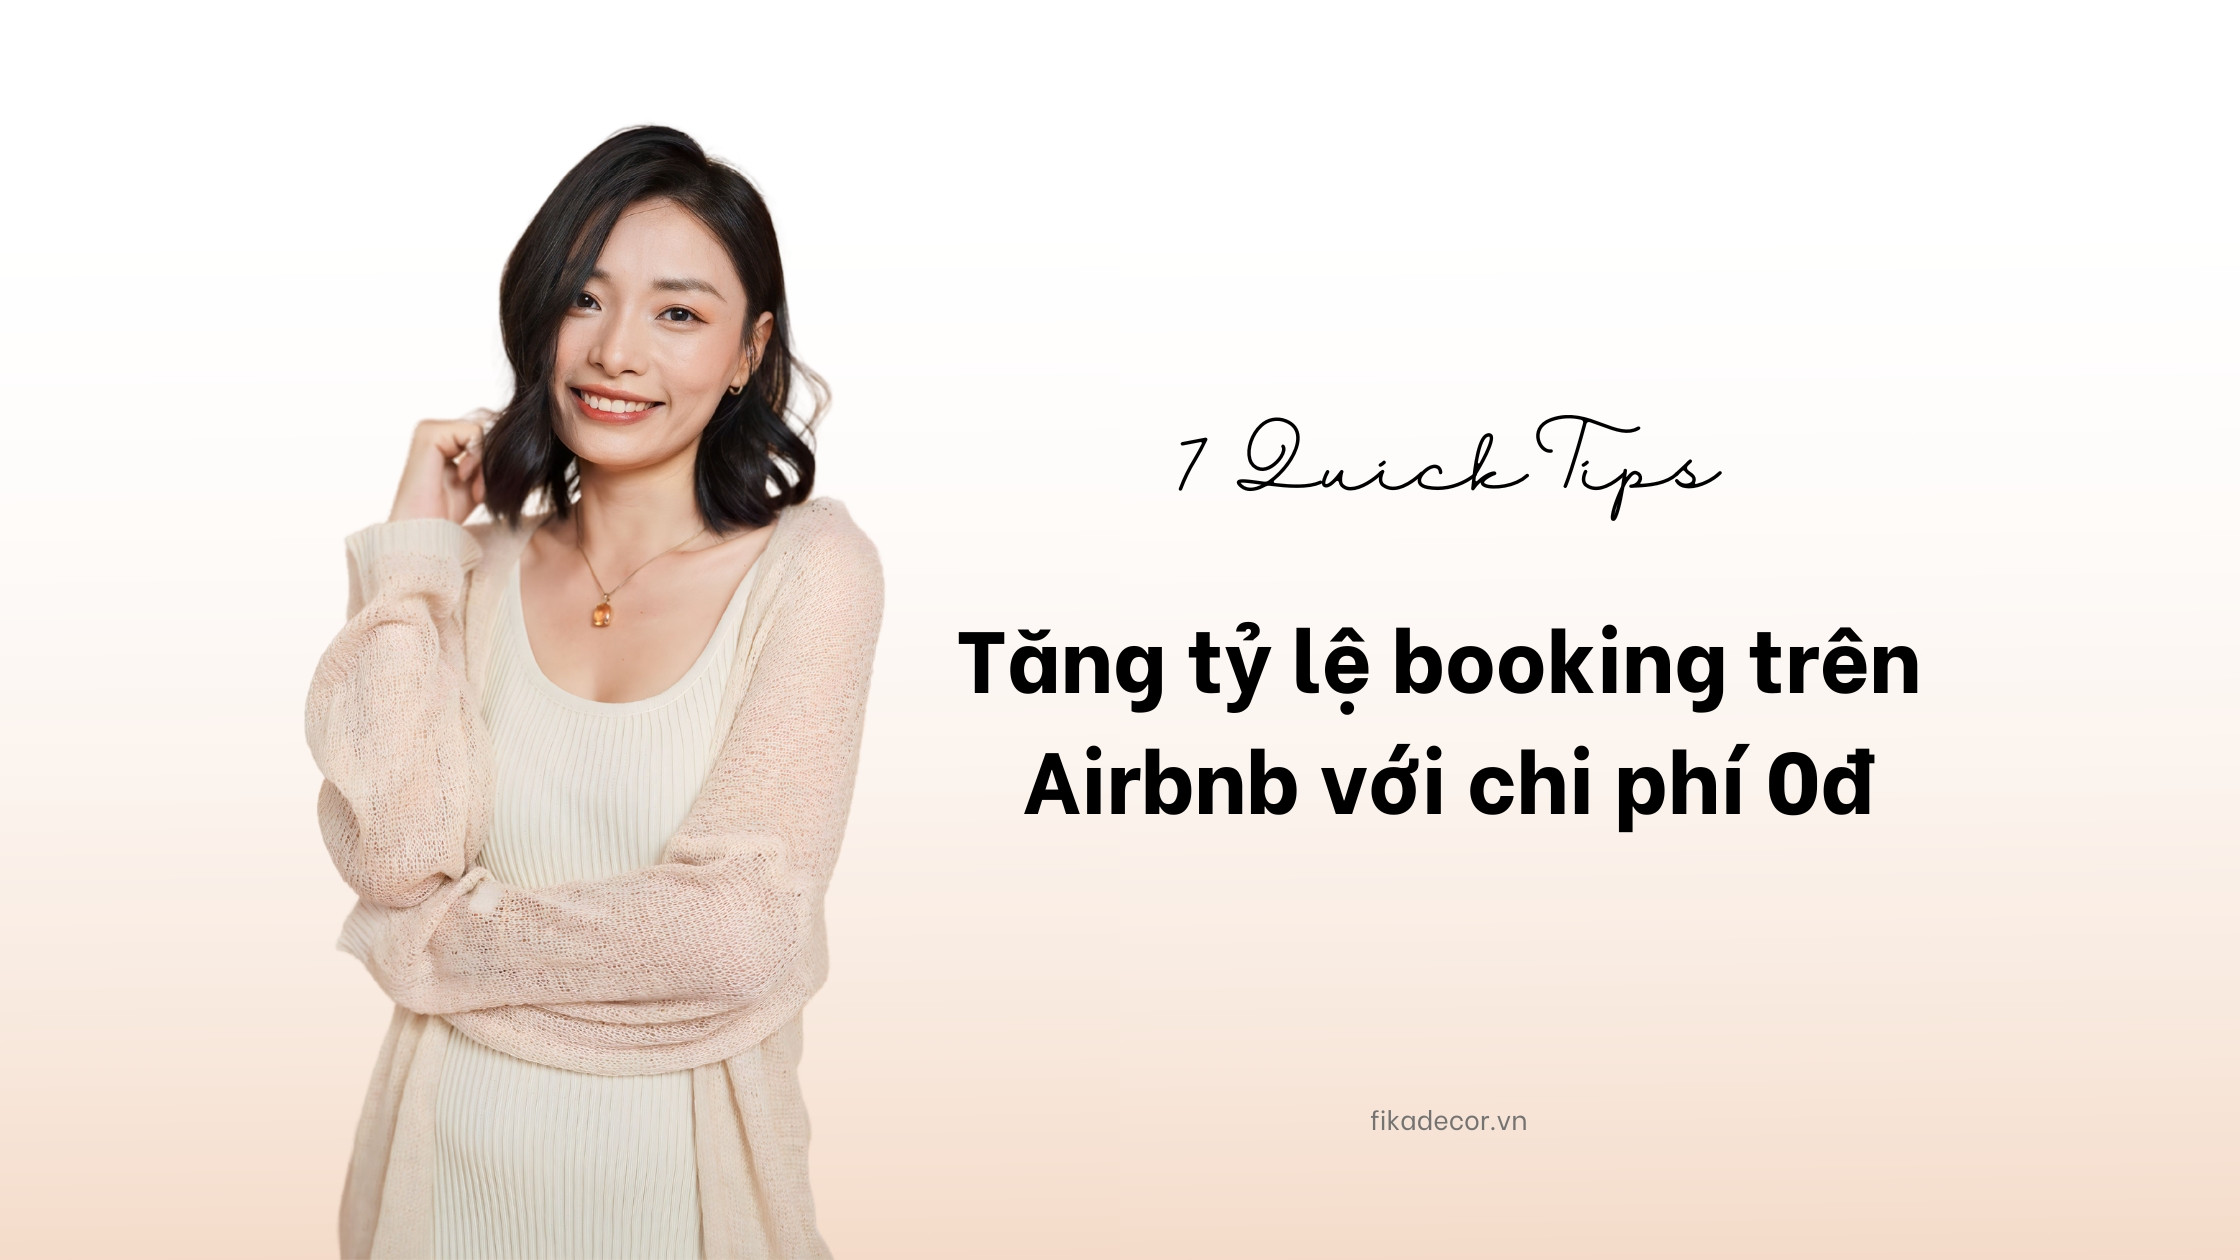 7 Quick Tips giúp Tăng tỷ lệ booking trên Airbnb mà không tốn bất kì chi phí nào 2